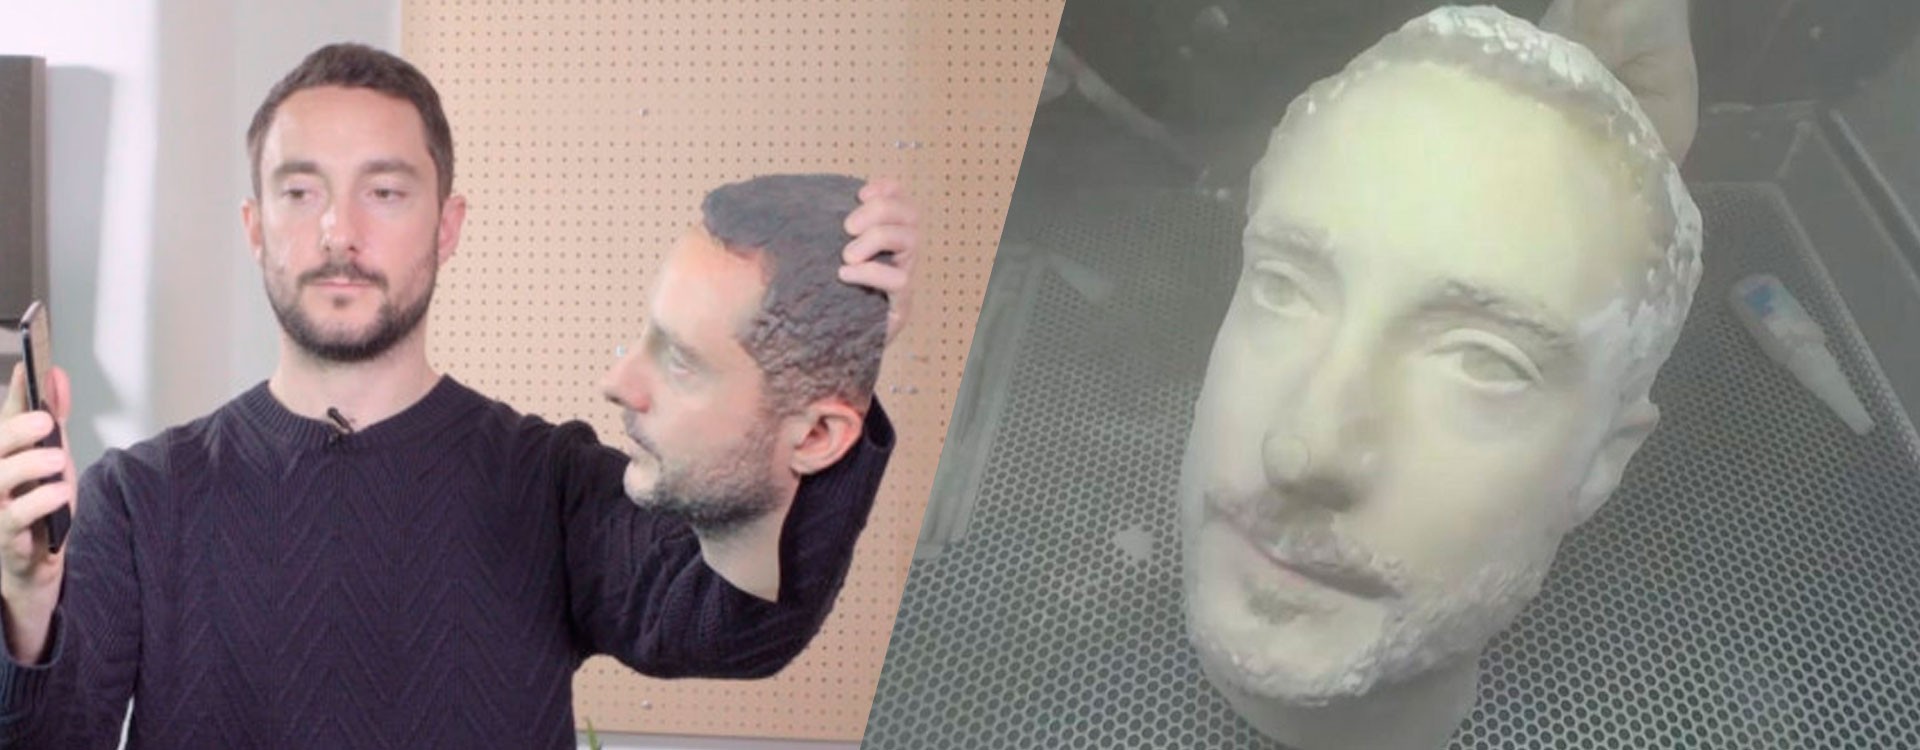 3D-печатная голова может разблокировать телефон